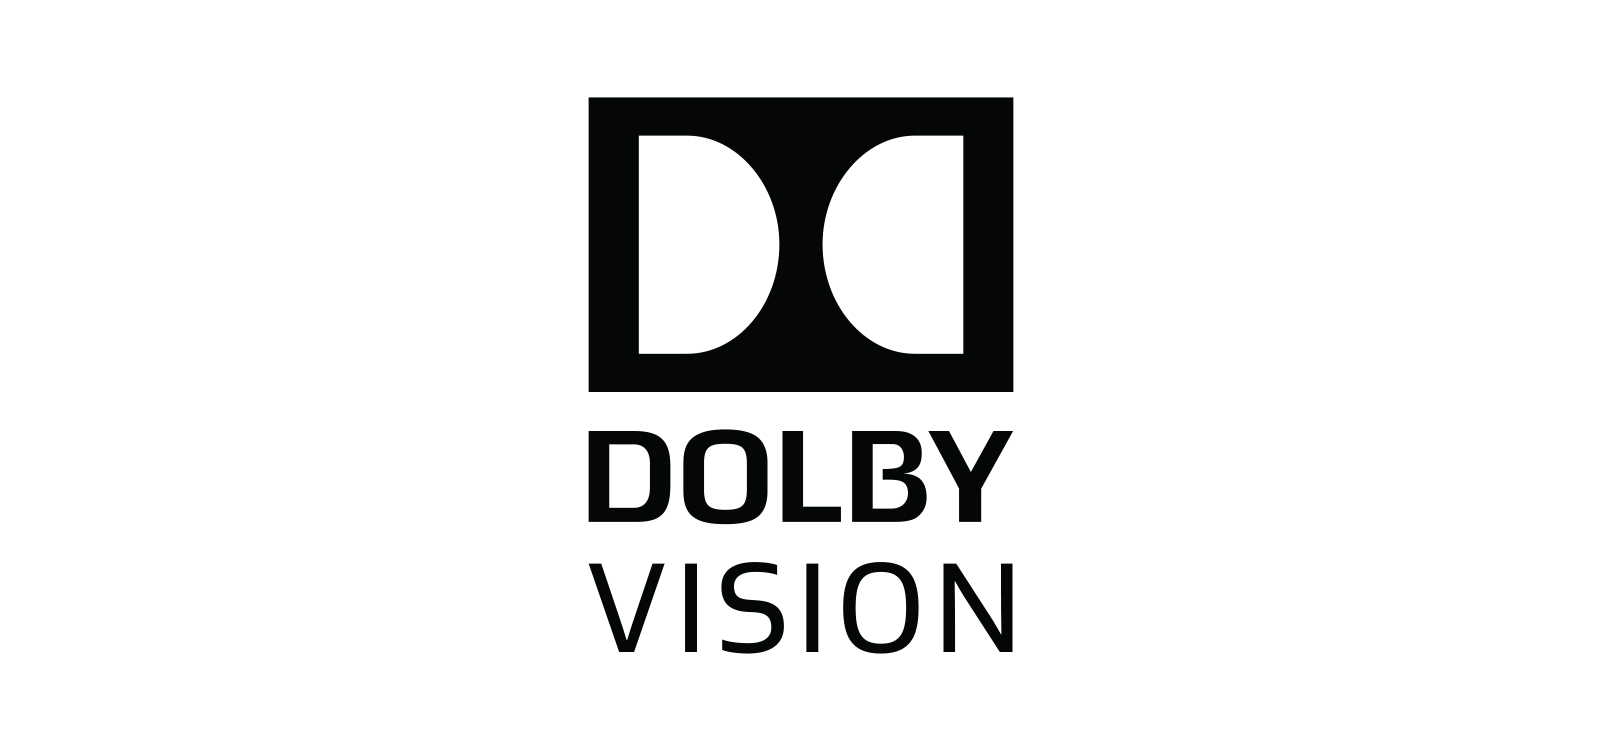 لوگو dolby vision